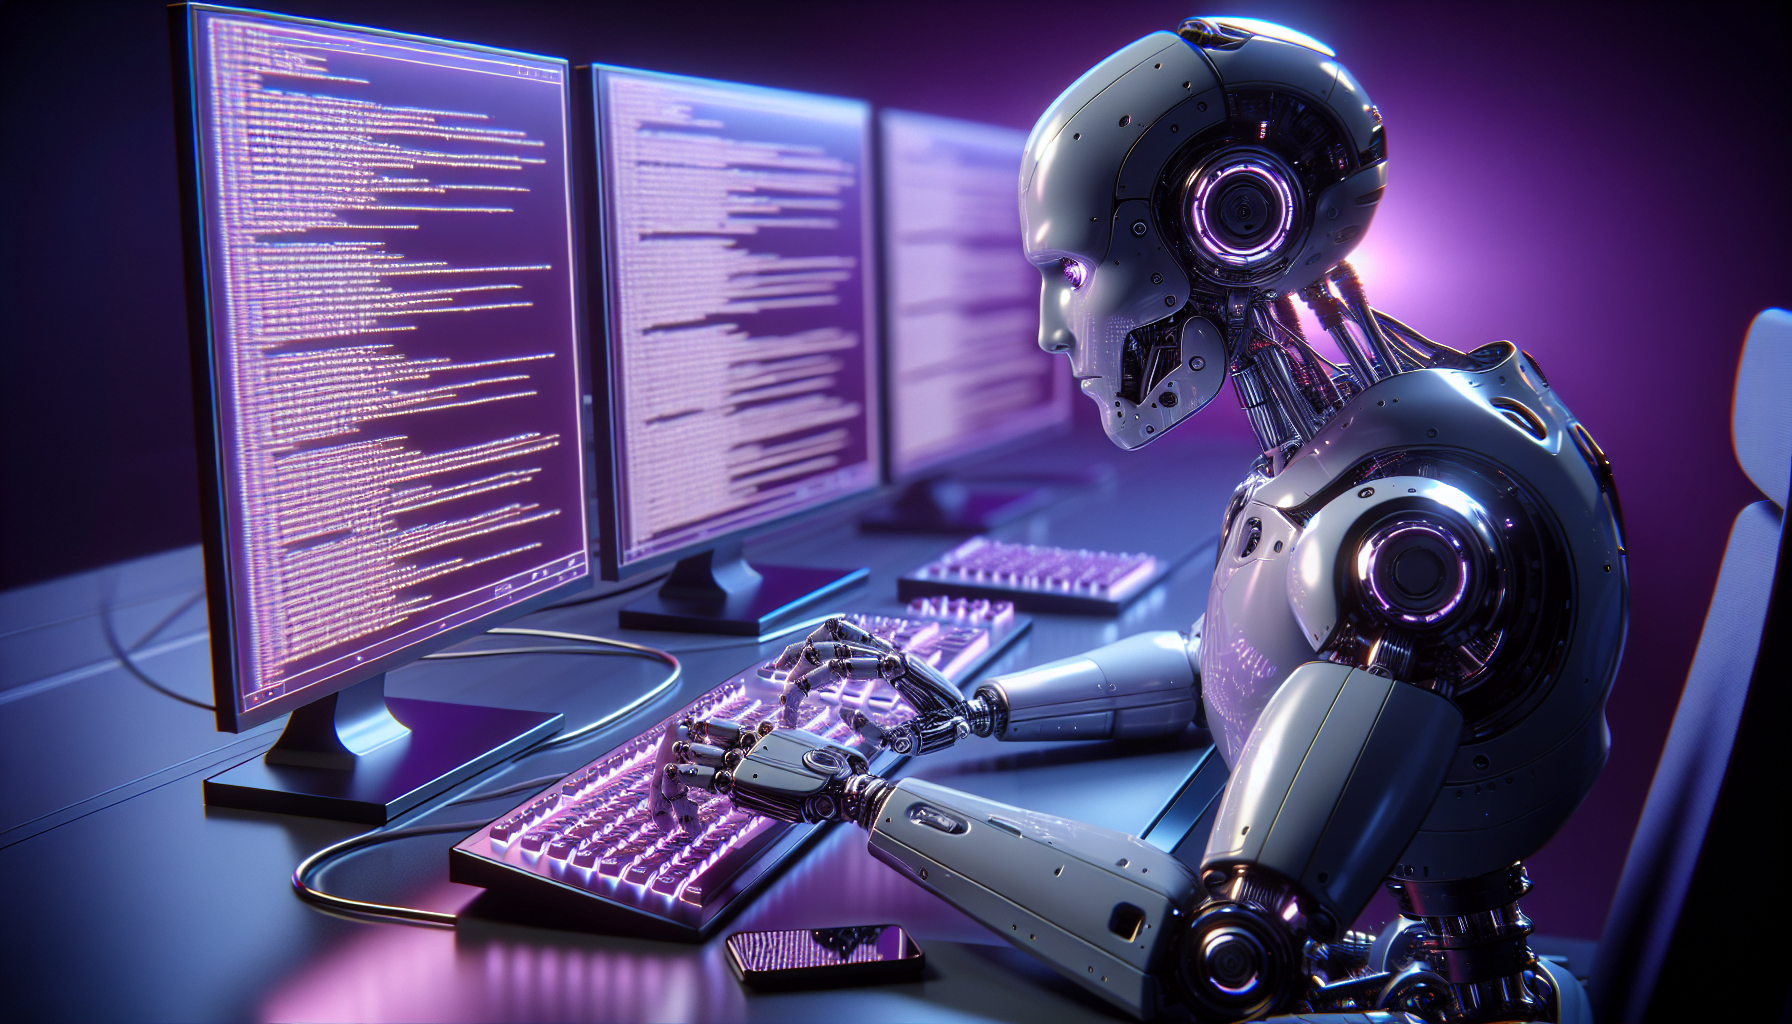 robot violet realiste tapant sur ordinateur futuriste codes complexes concentration mecanique lueur ecrans reflets